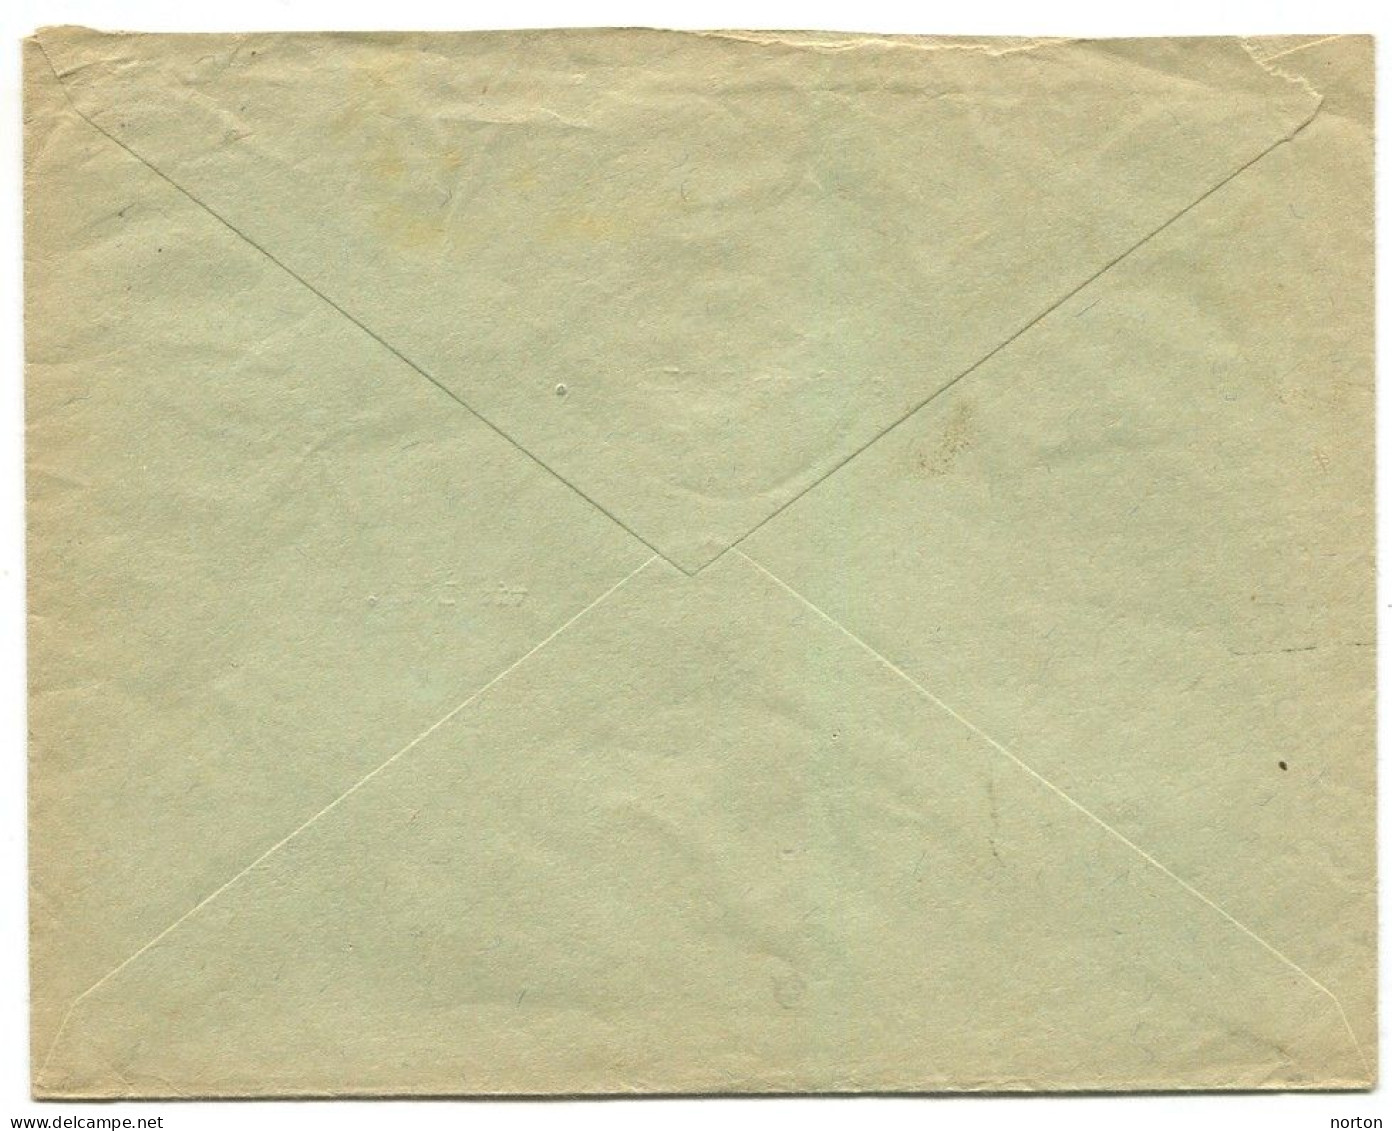 Congo Stanleyville  Oblit. Keach 8A6 Sur C.O.B. 177 Sur Lettre Vers Kima Via Lowa Le 06/09/1940 - Briefe U. Dokumente